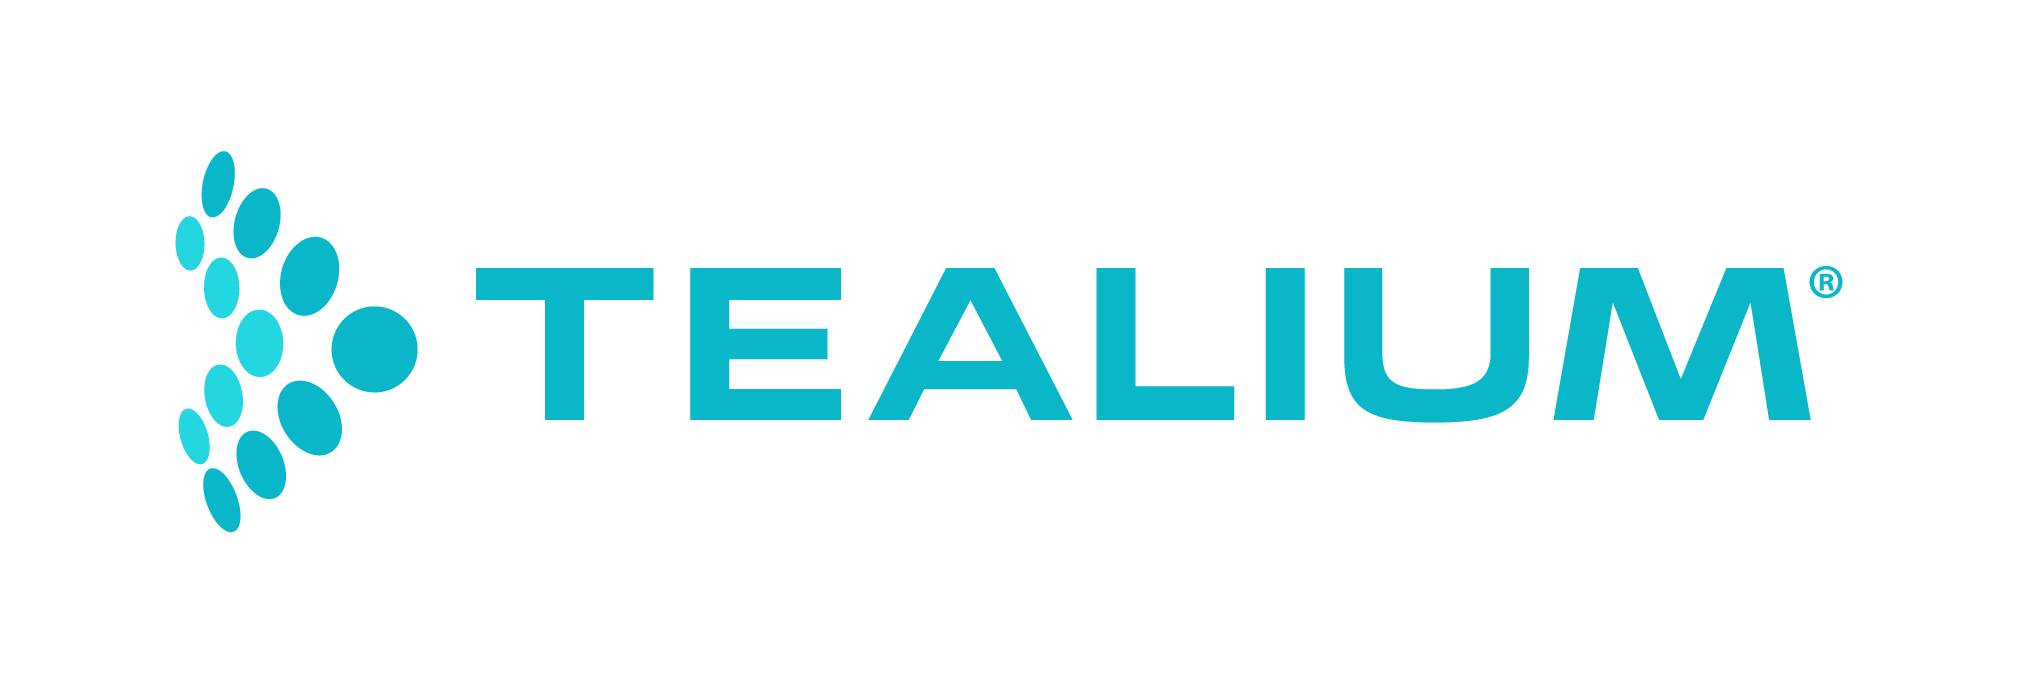 Tealium logo rgb full color